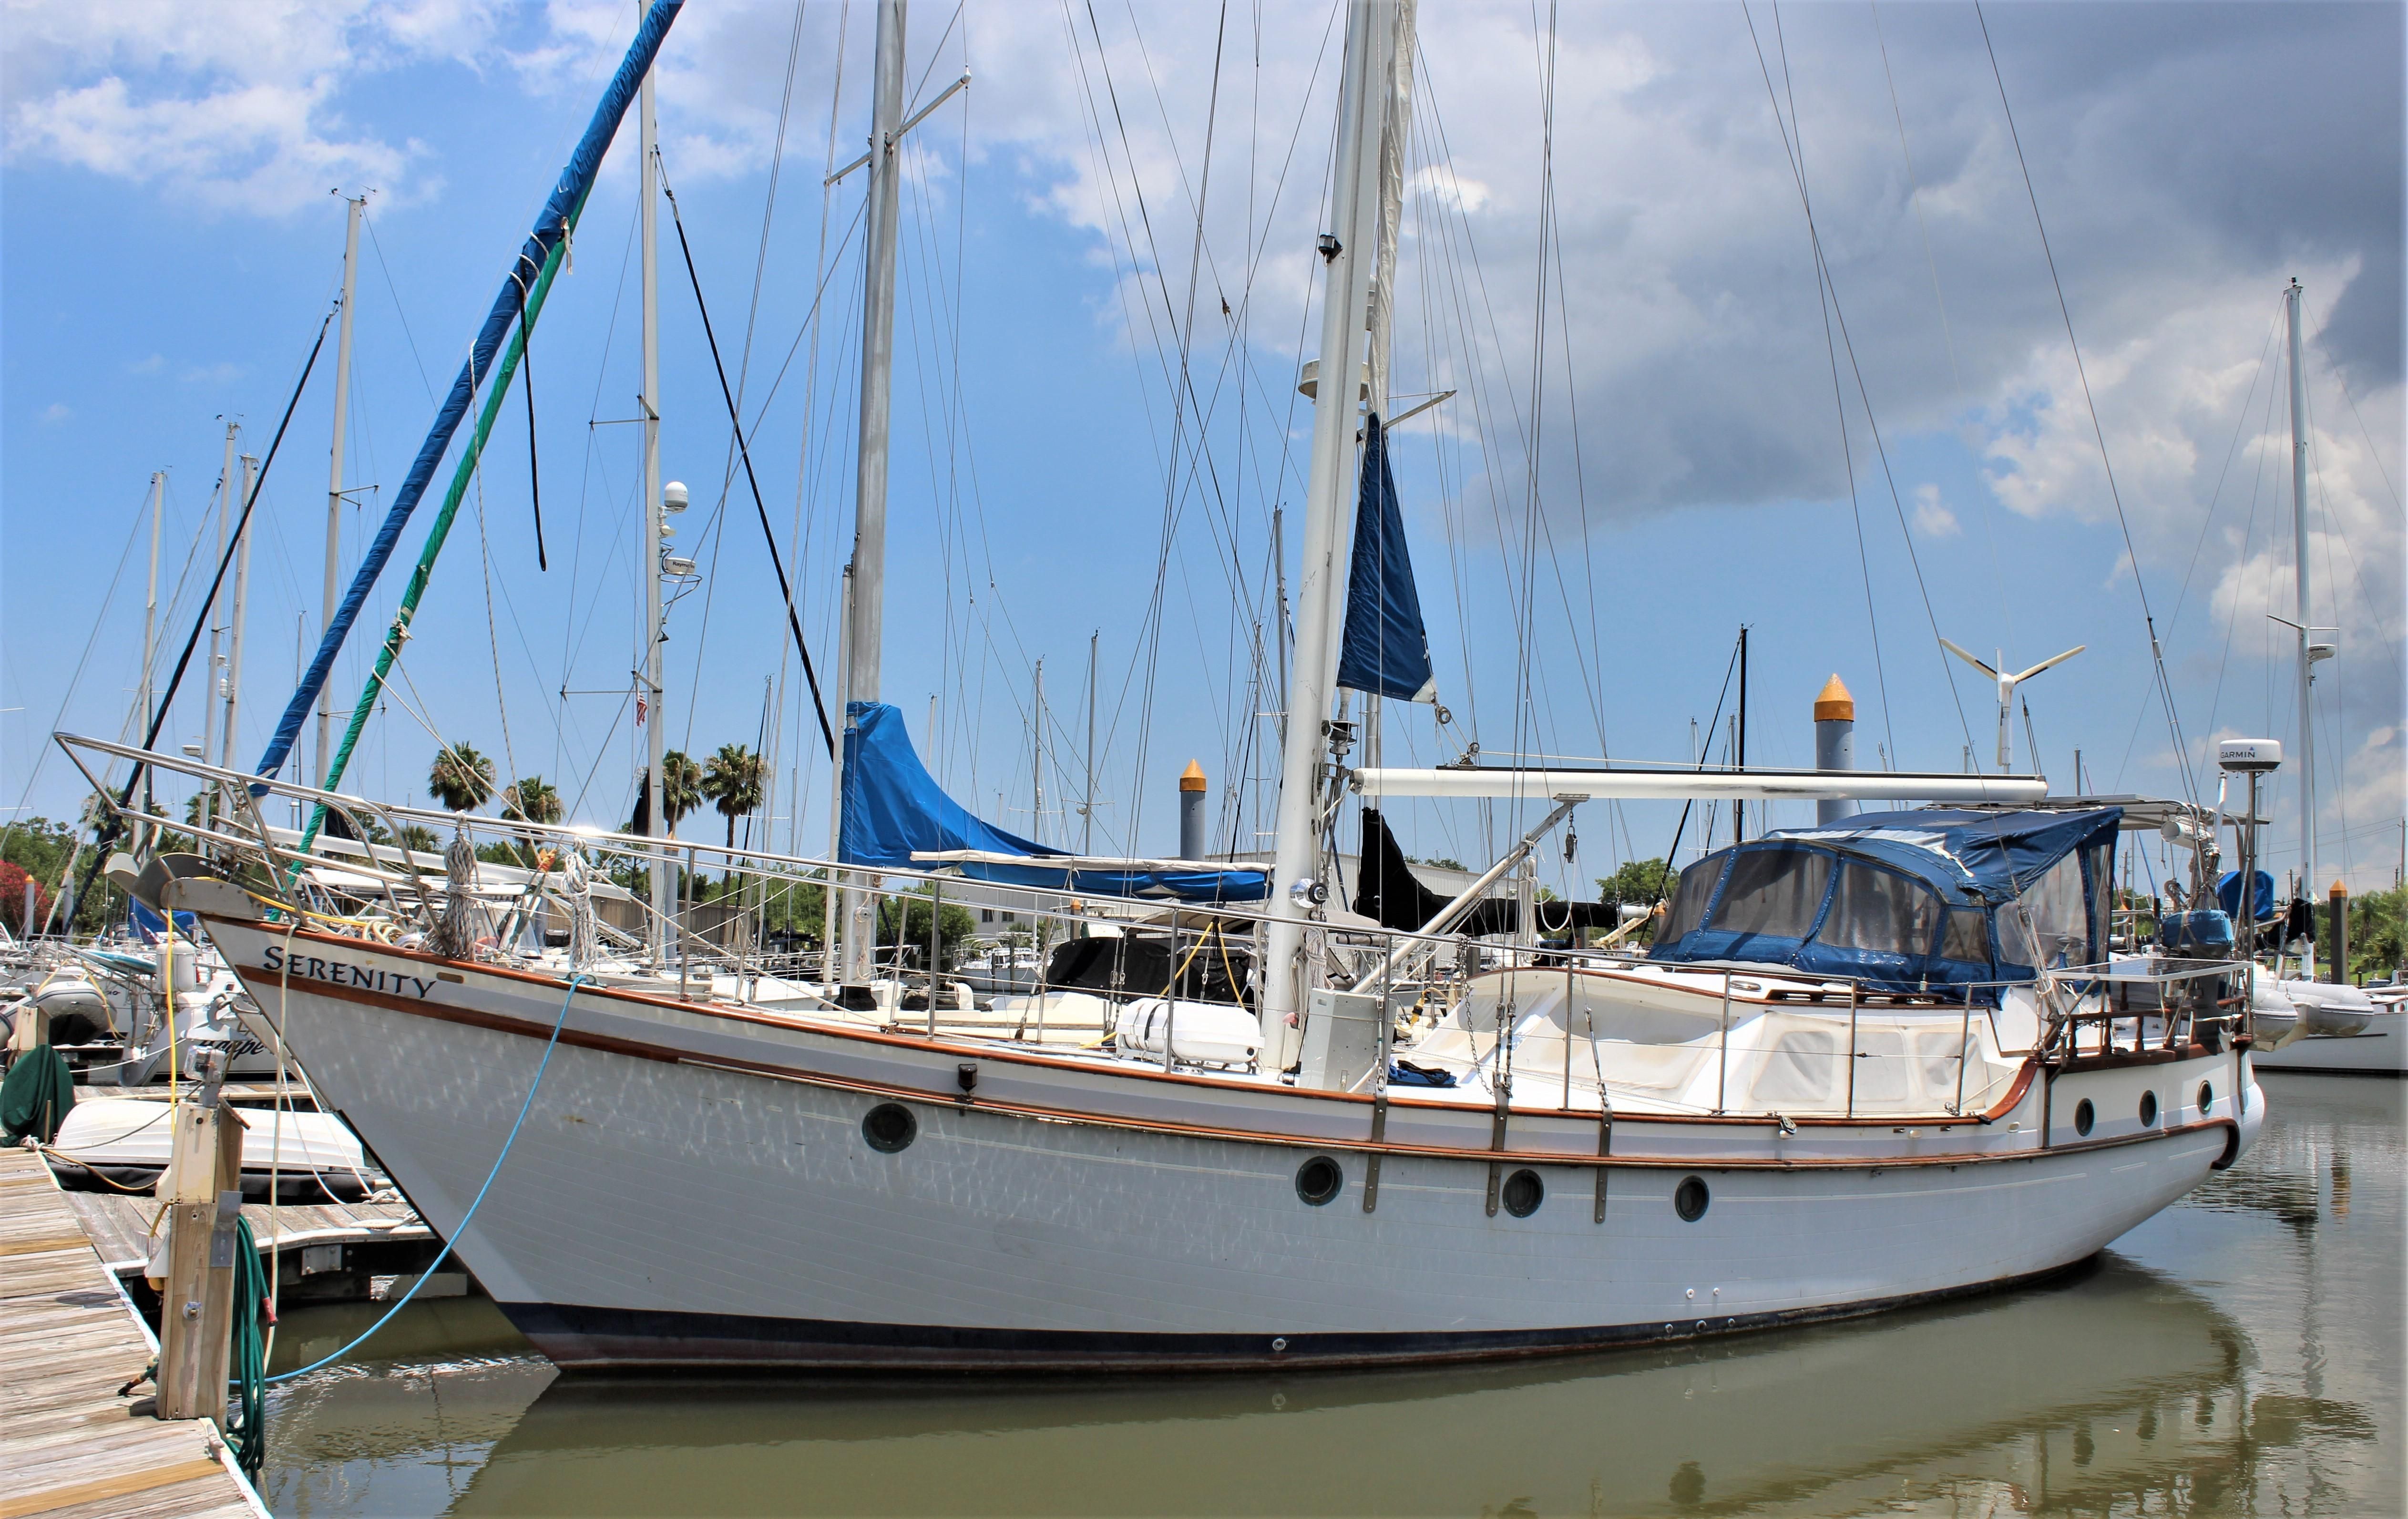 50' sailboat